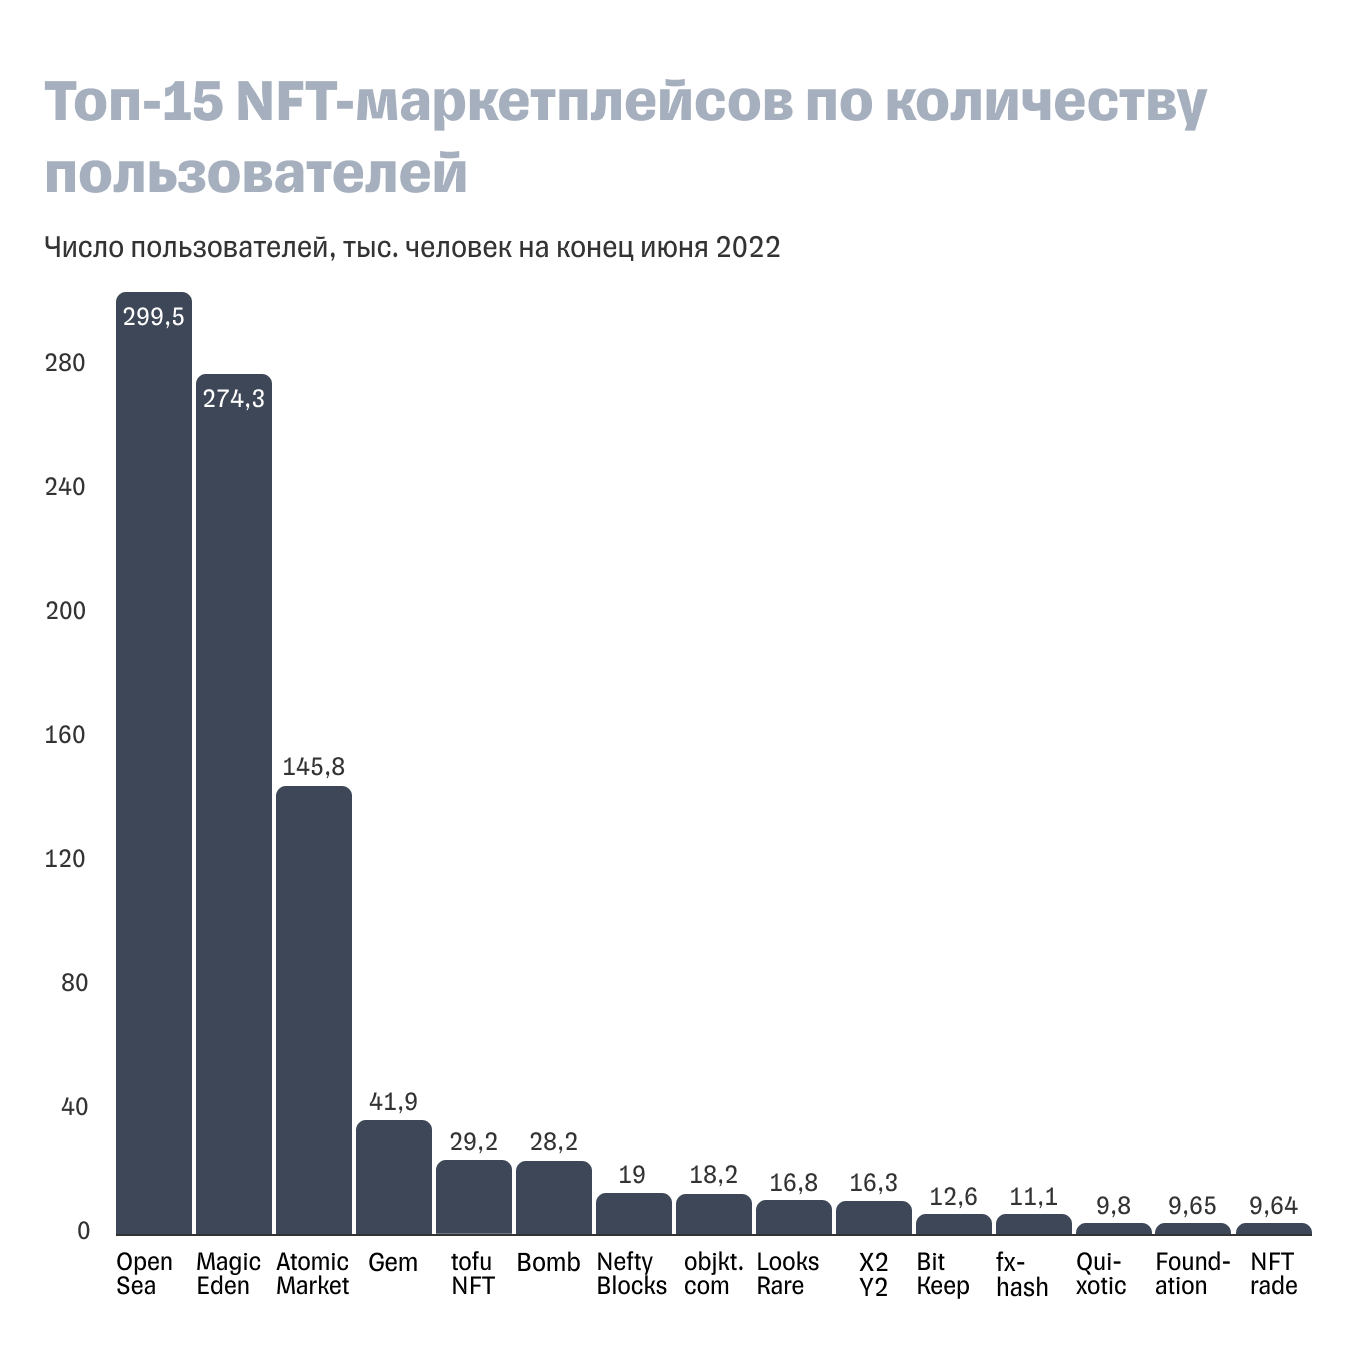 Топ самых посещаемых NFT-маркетплейсов: диаграмма